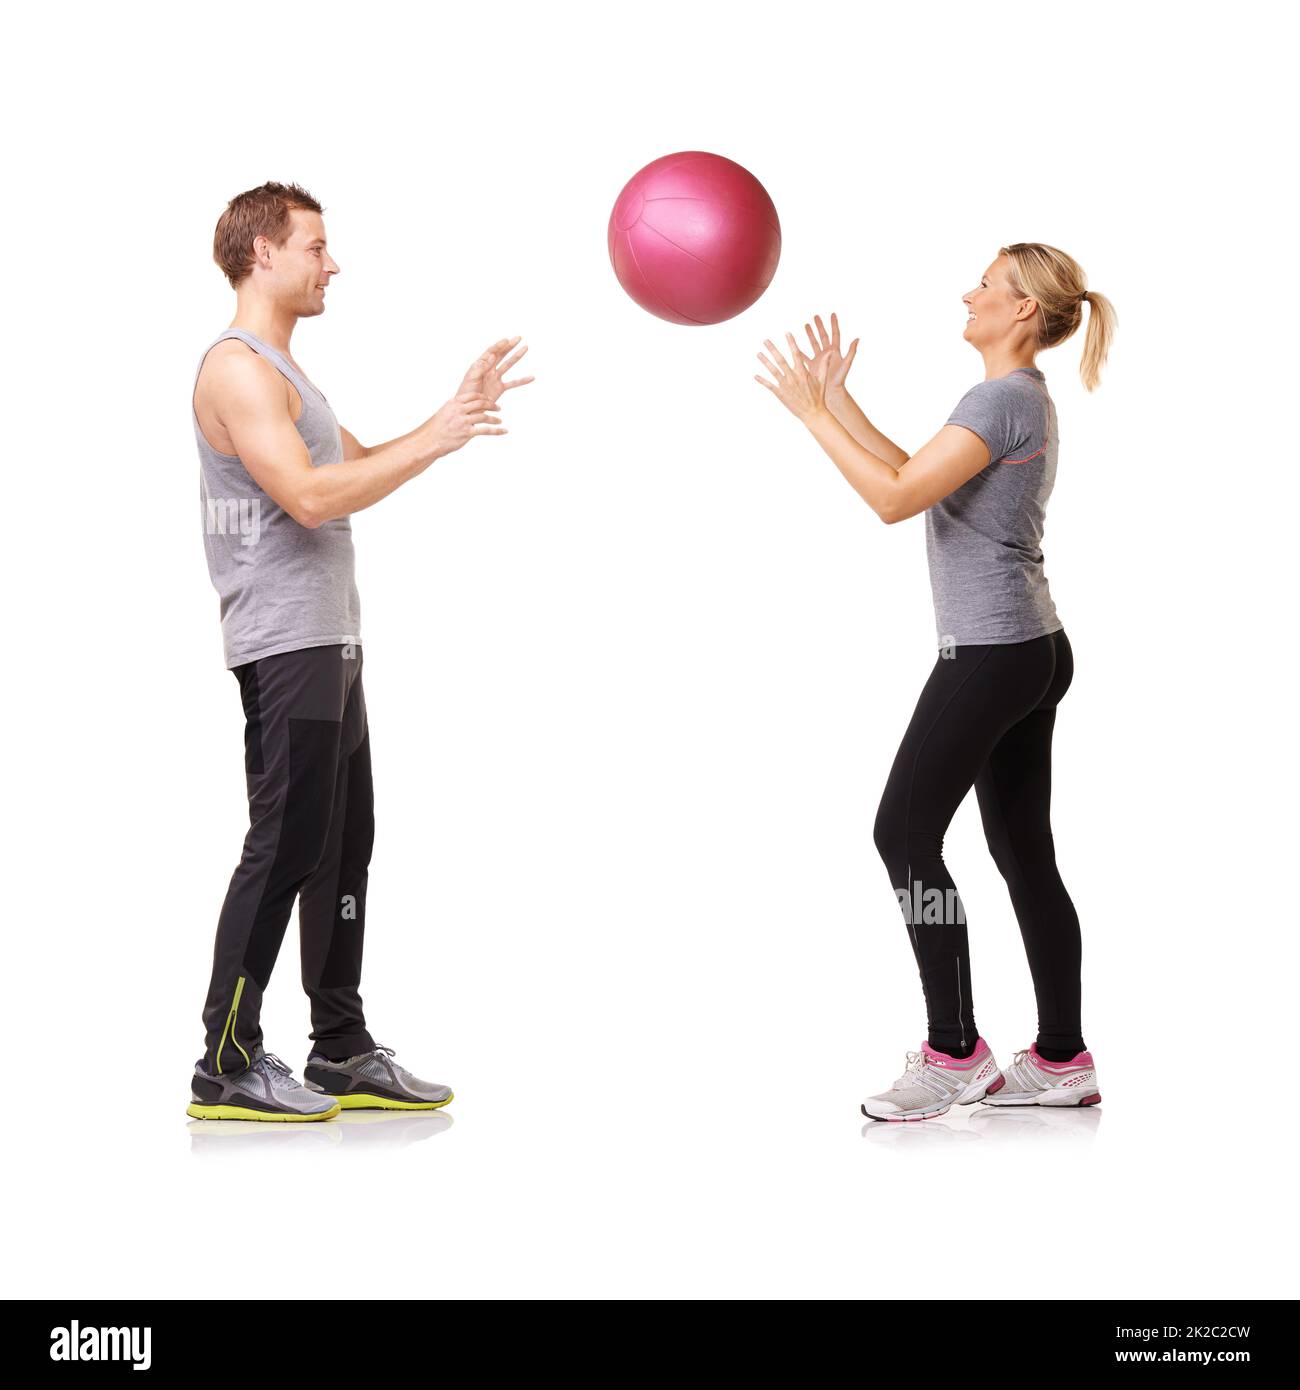 Zusammenpassen. Ein Mann und eine Frau trainieren, indem sie sich einen Medizinball zuwerfen. Stockfoto